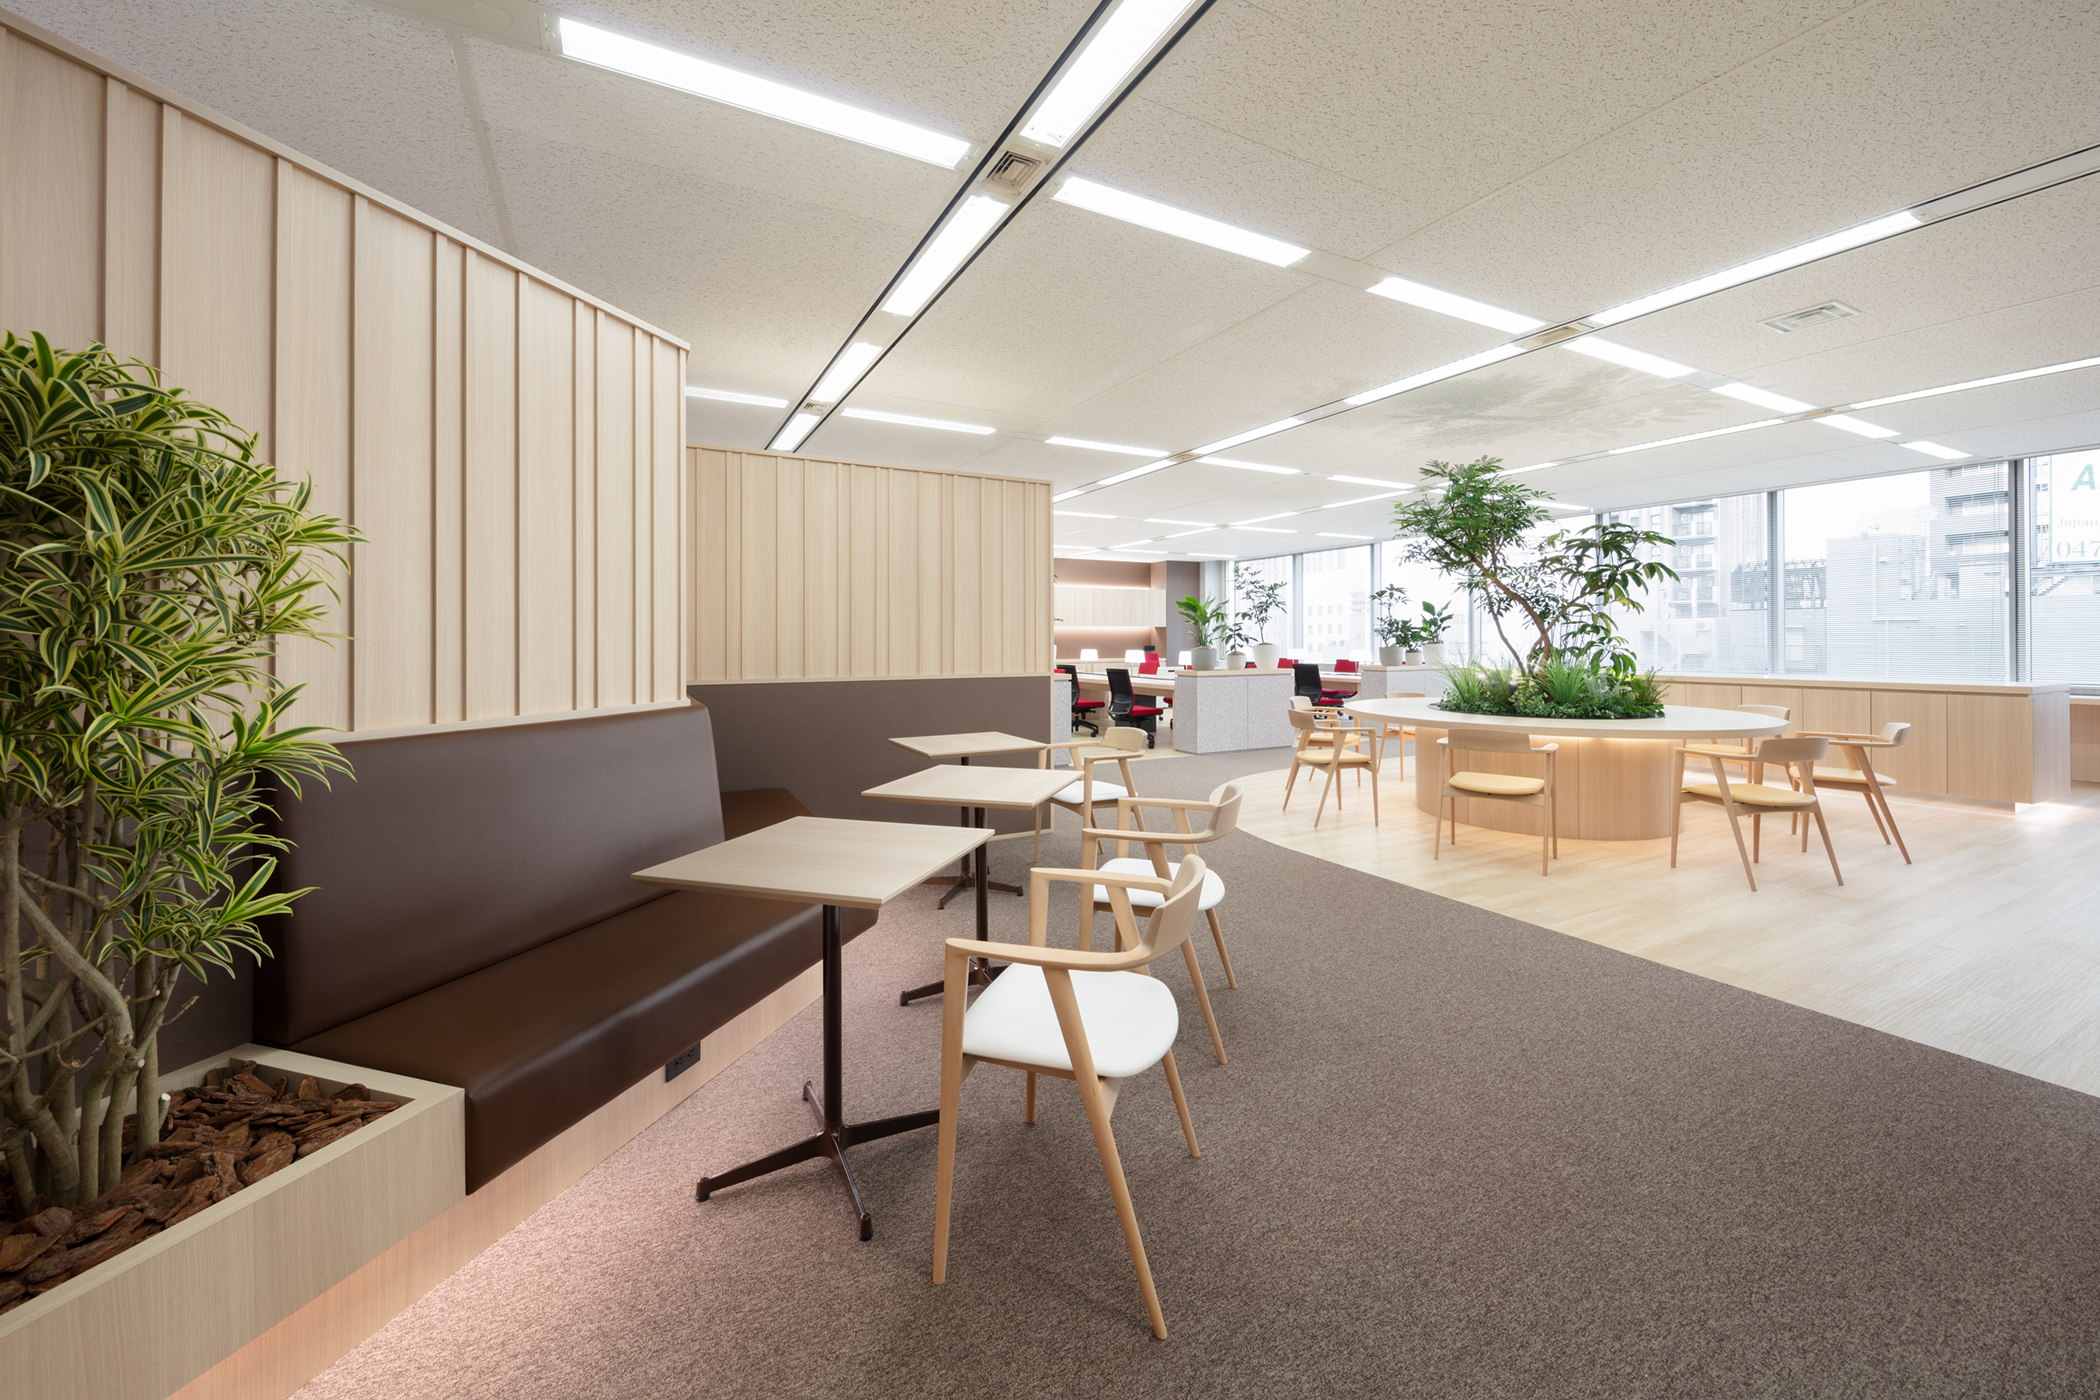 木目調を生かしたカフェのようなフリーアドレスのオフィスデザイン